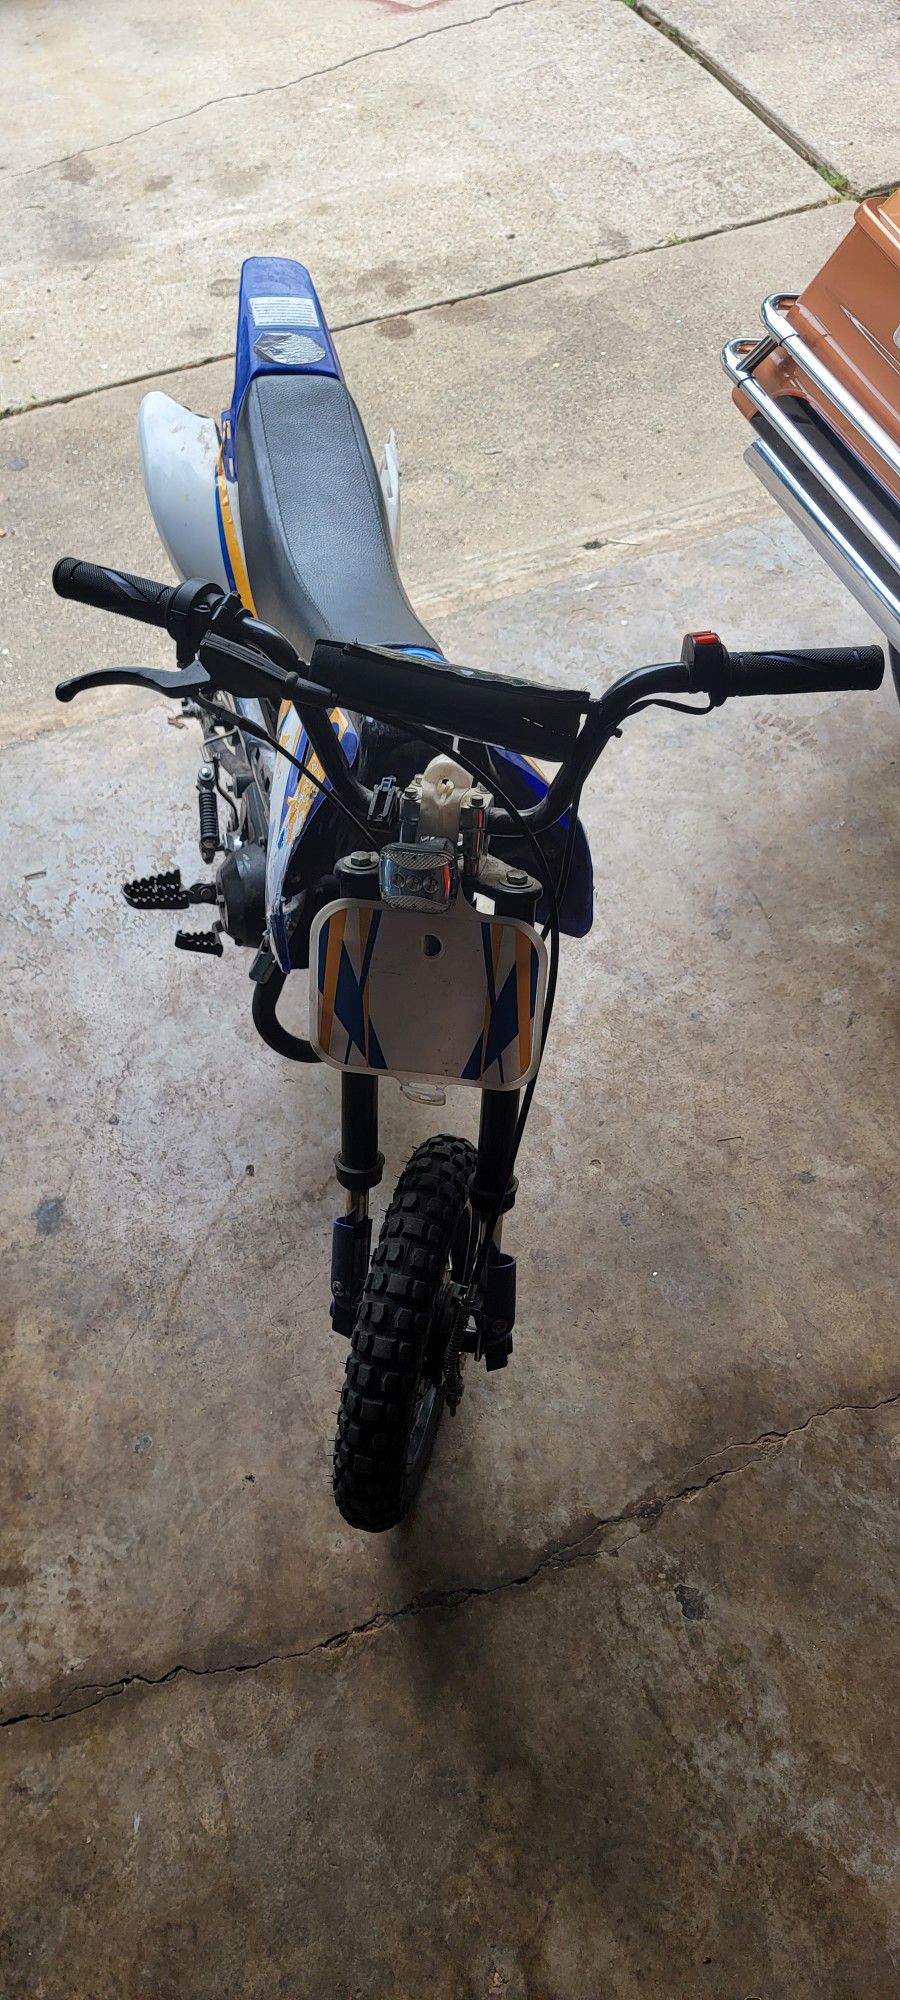 70cc Dirt Bike 